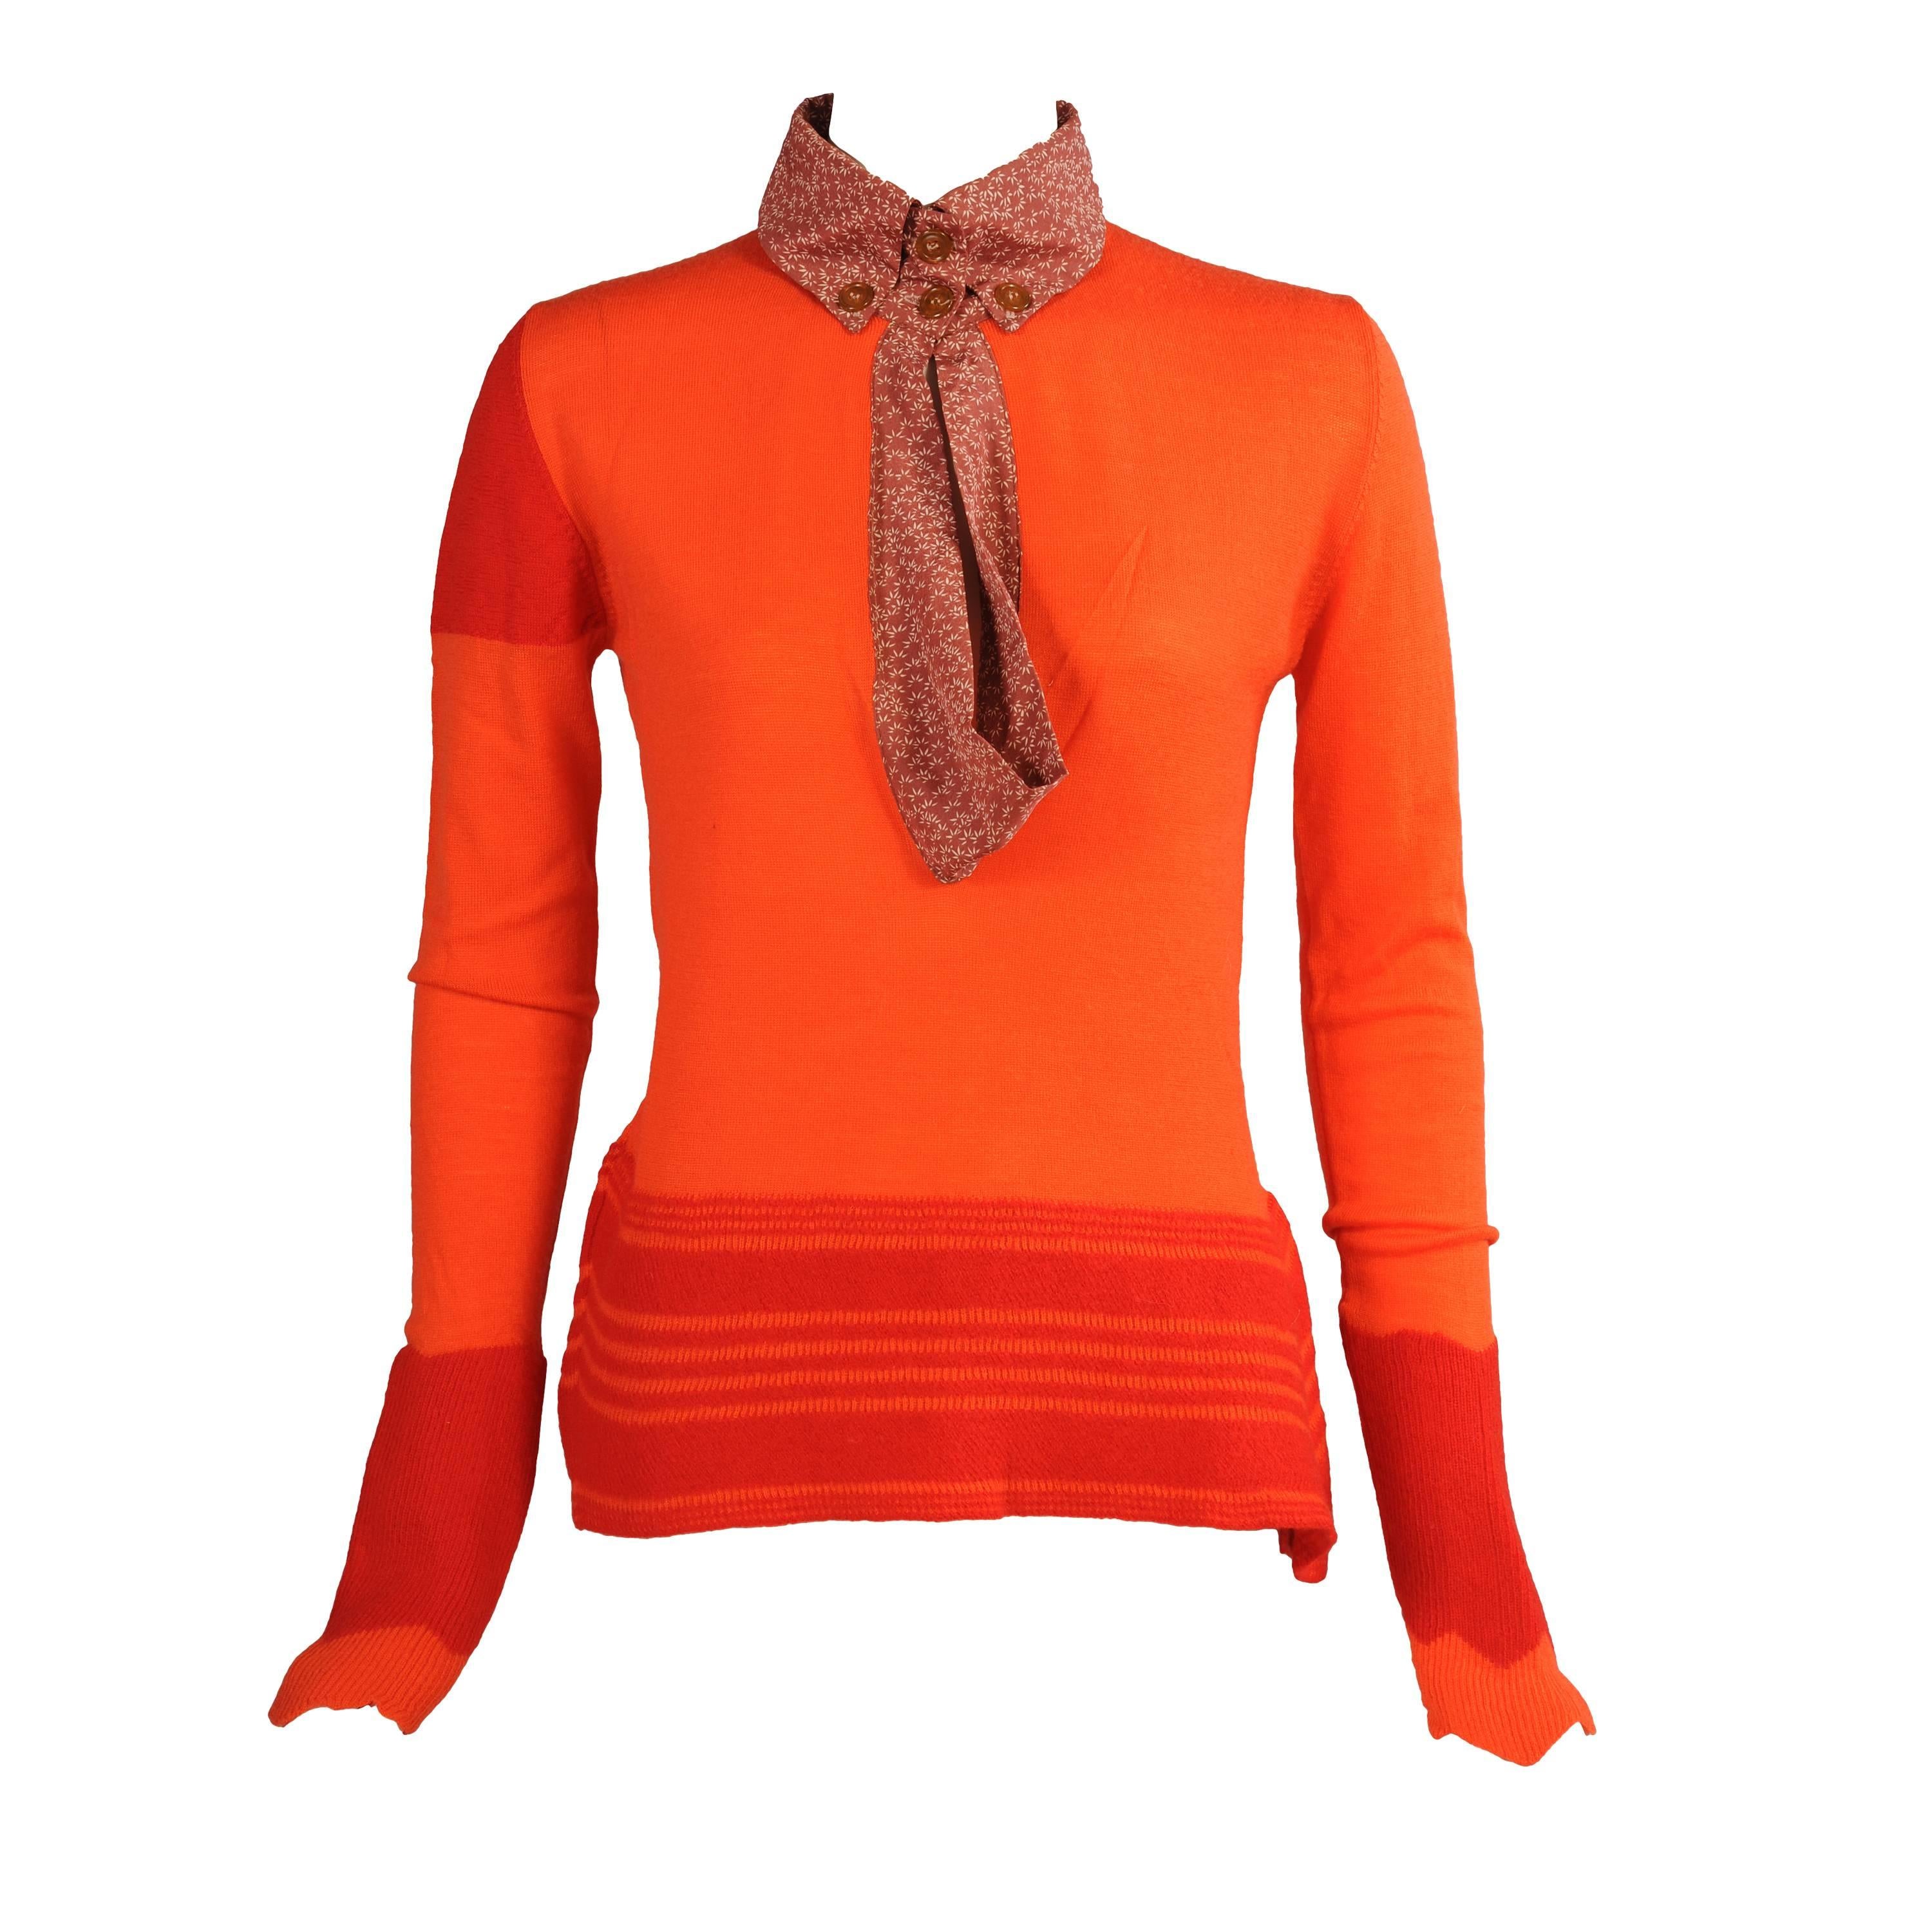 Vivienne Westwood Orange & Red Sweater, Never Worn